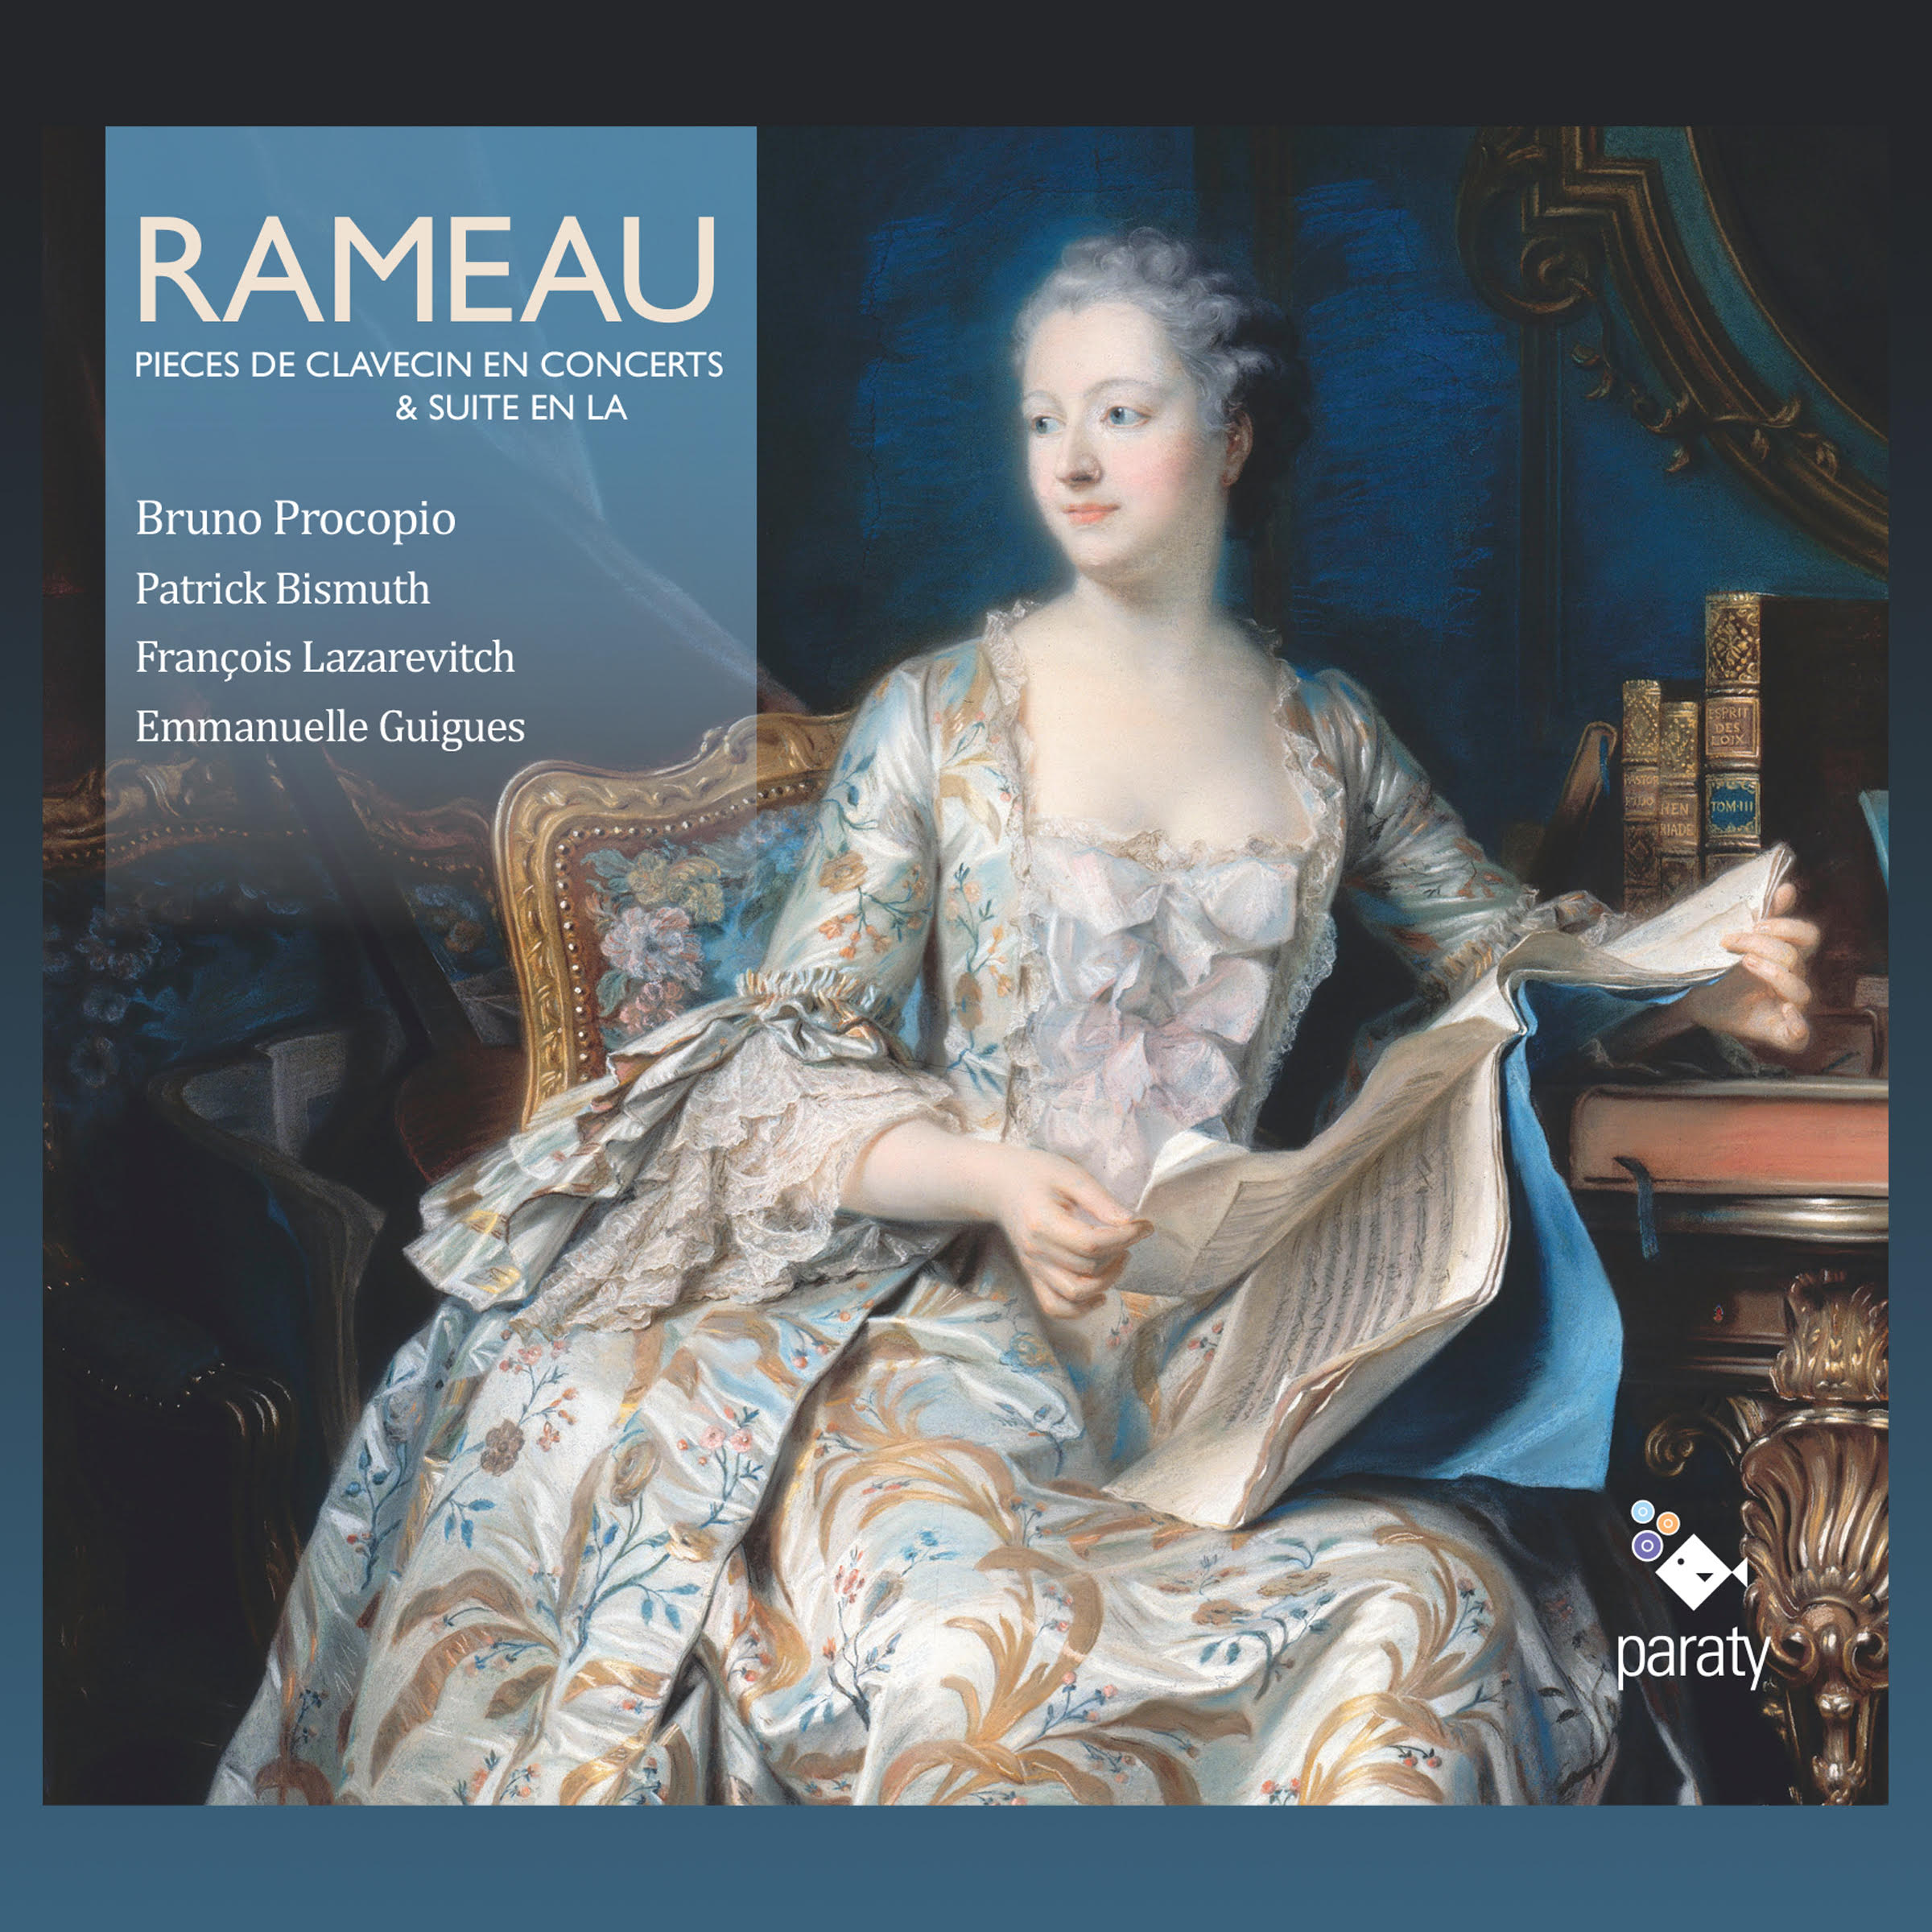 Rameau, Pièces de clavecin en concerts